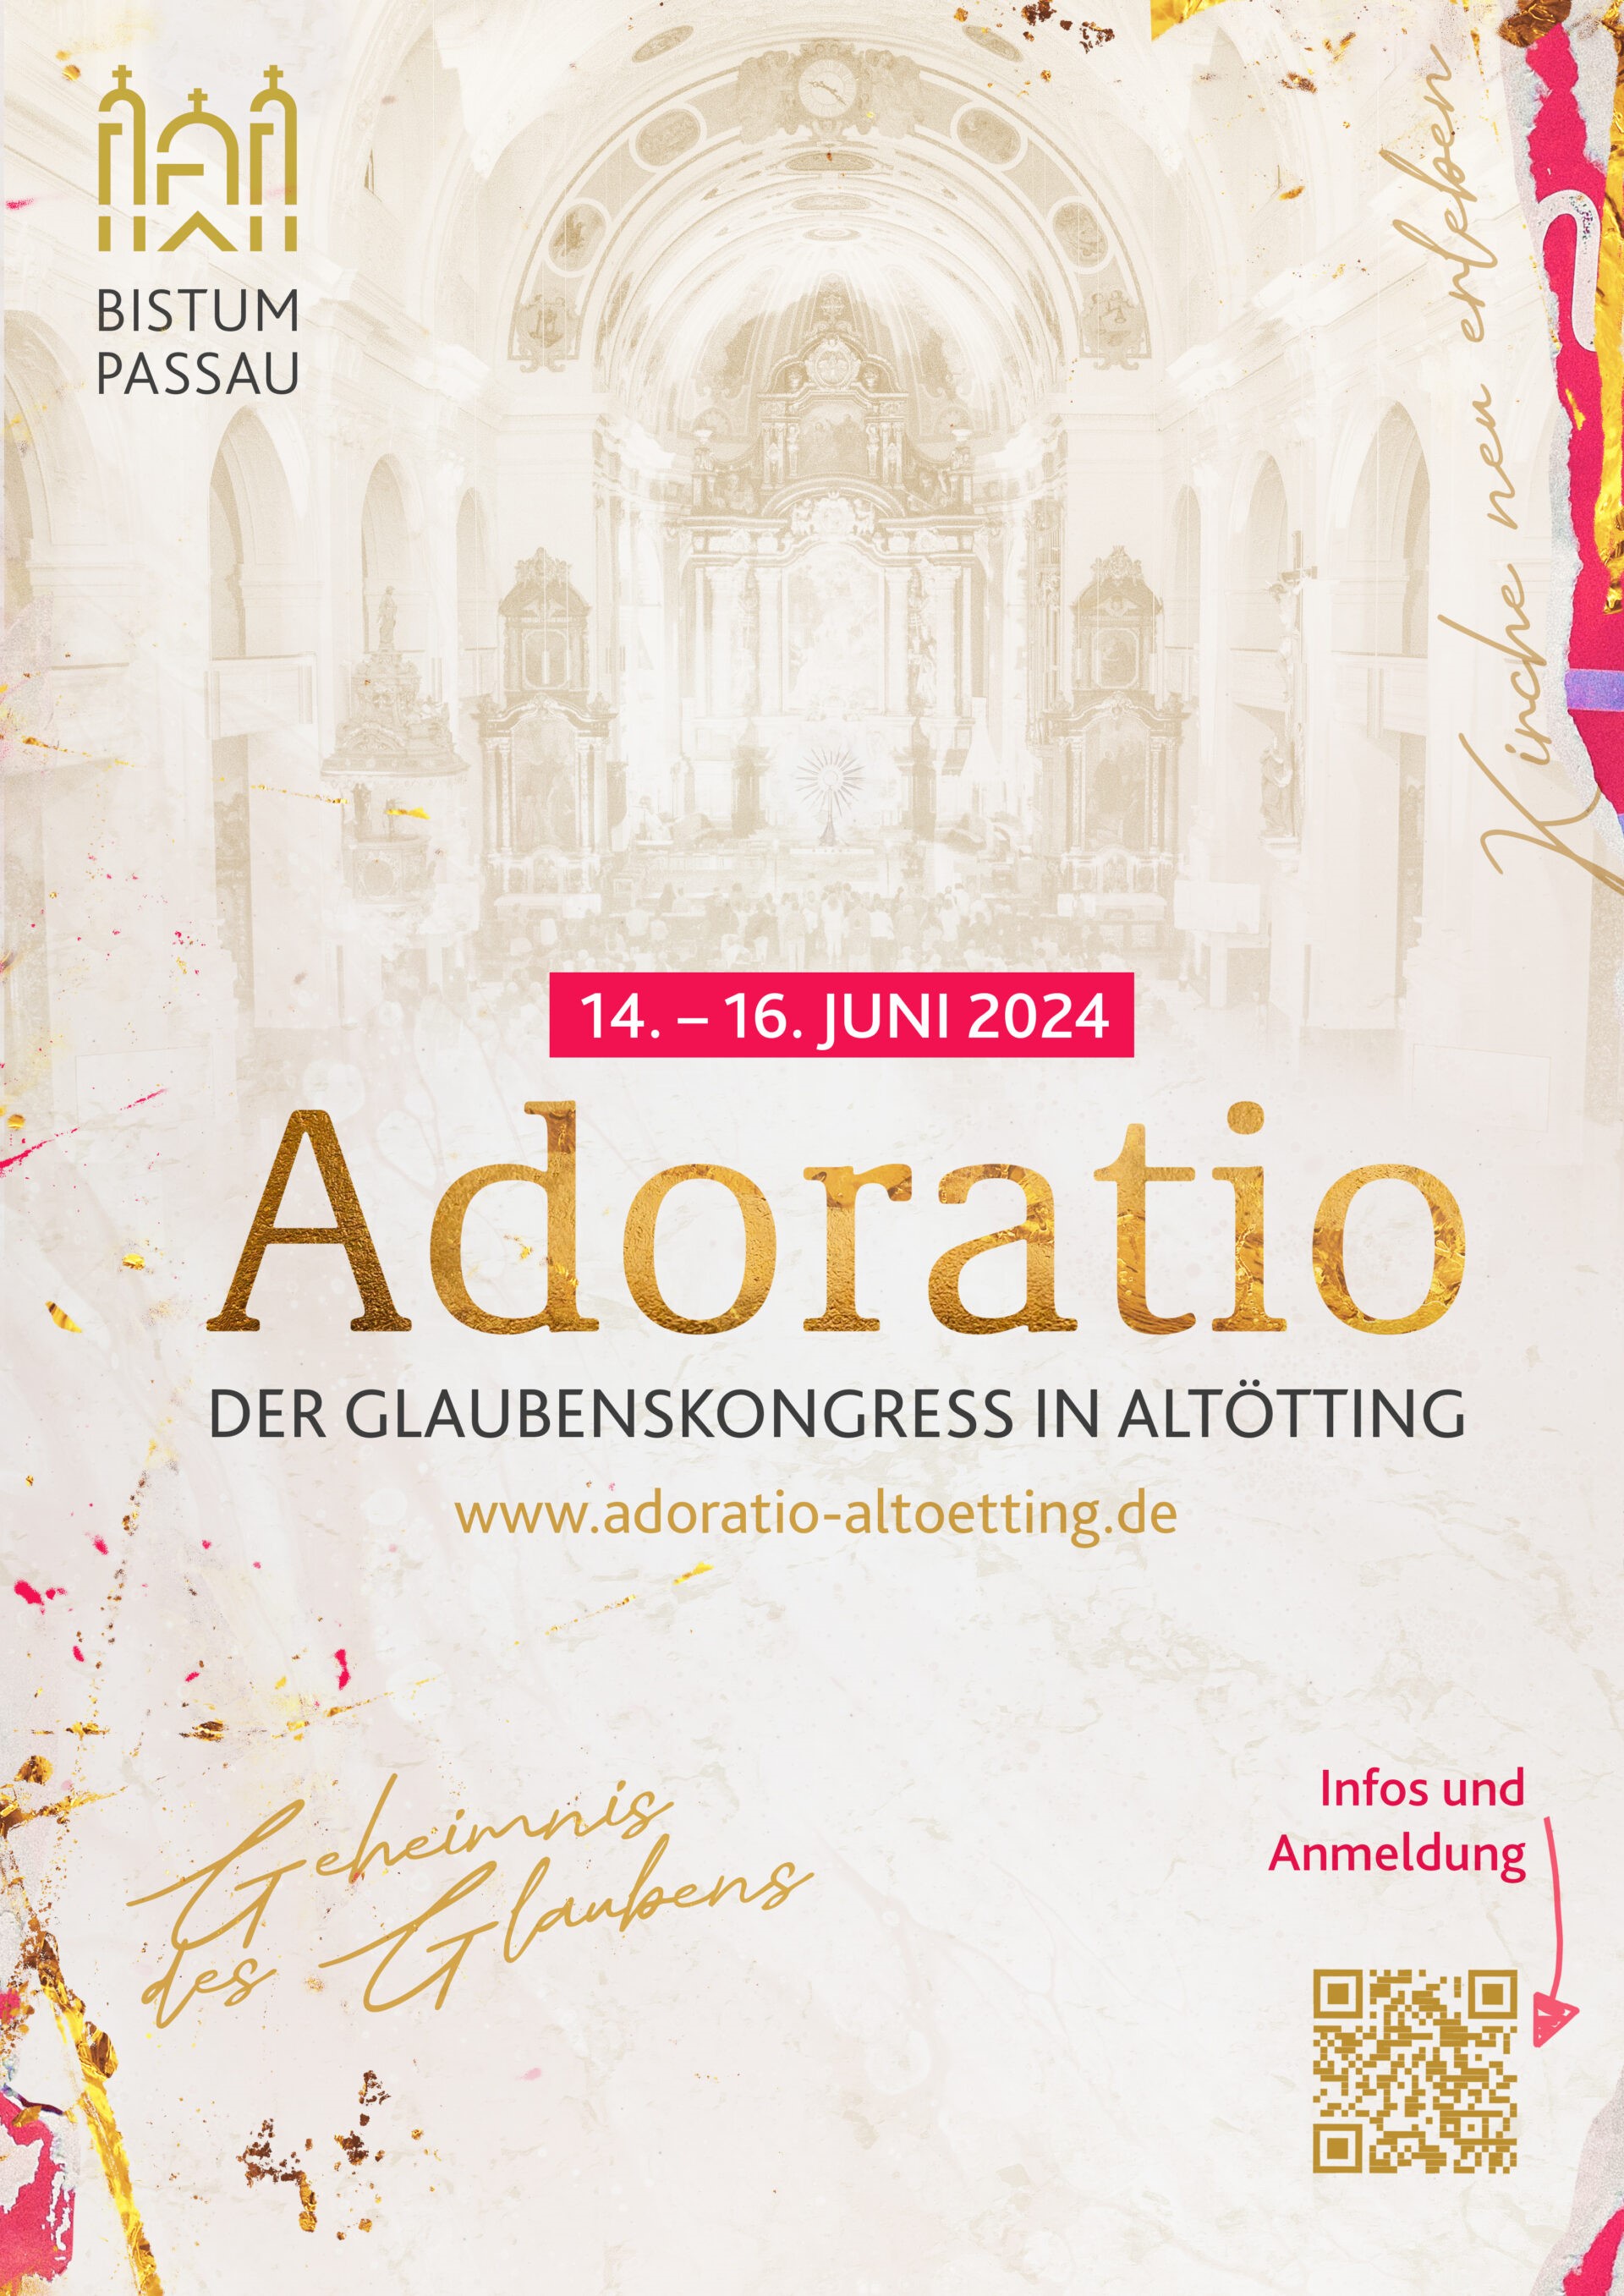 adoratio (c) Bistum Passau